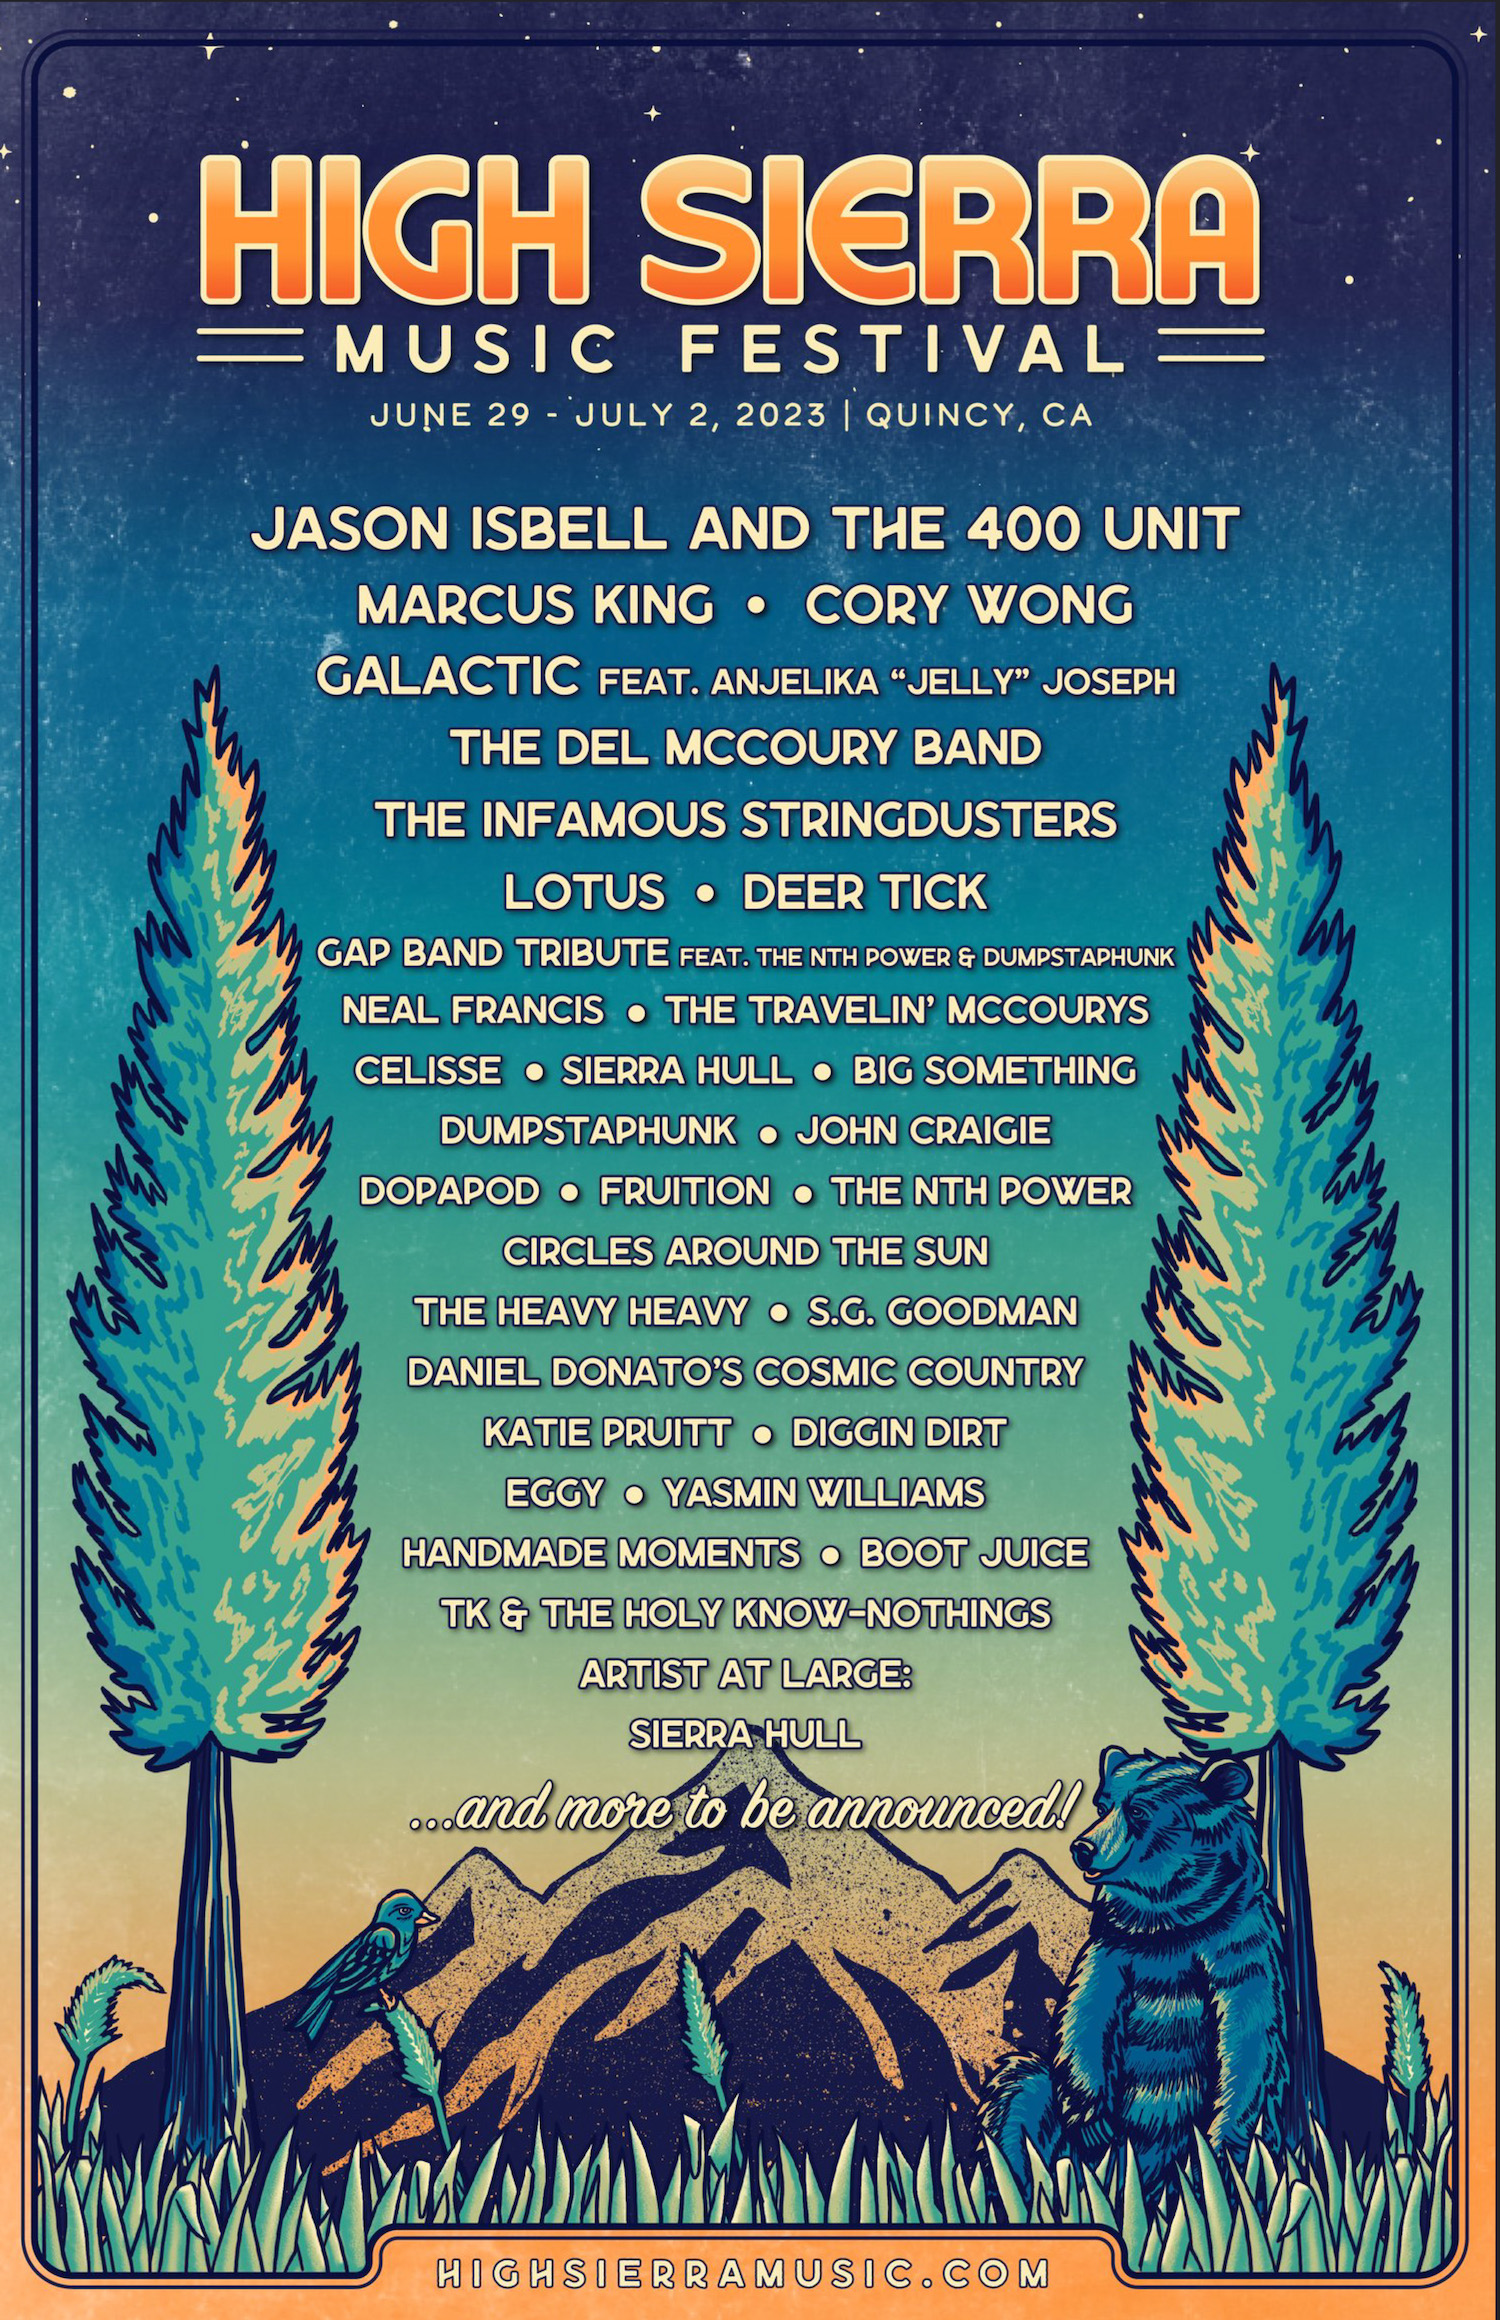 High Sierra Music Festival announces initial lineup Serving Carson